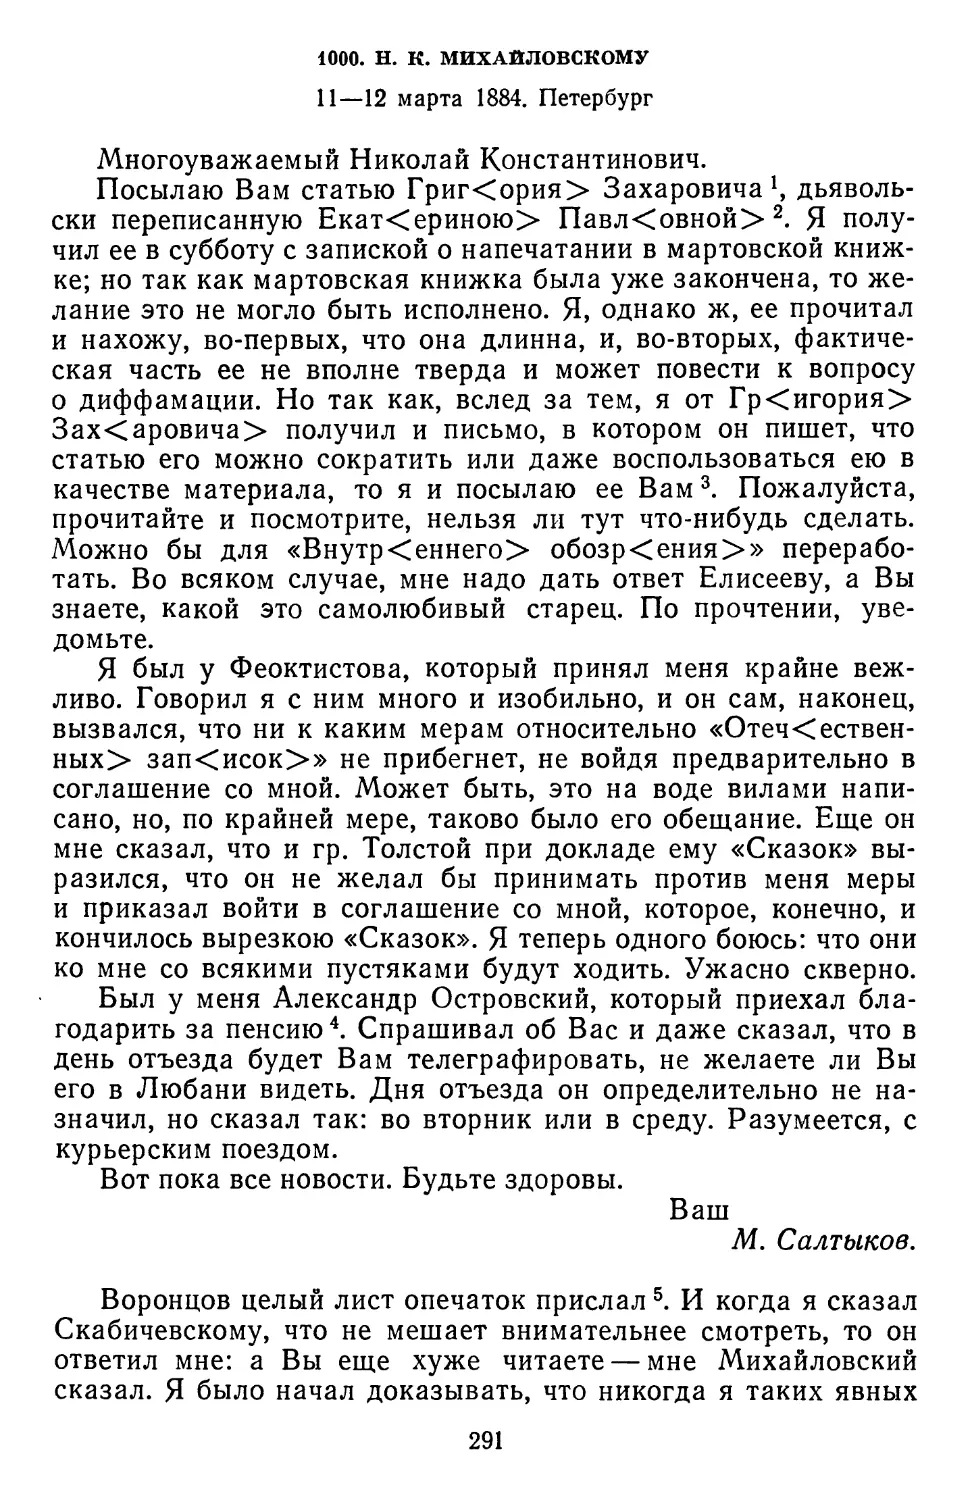 1000.Н. К. Михайловскому. 11—12 марта 1884. Петербург